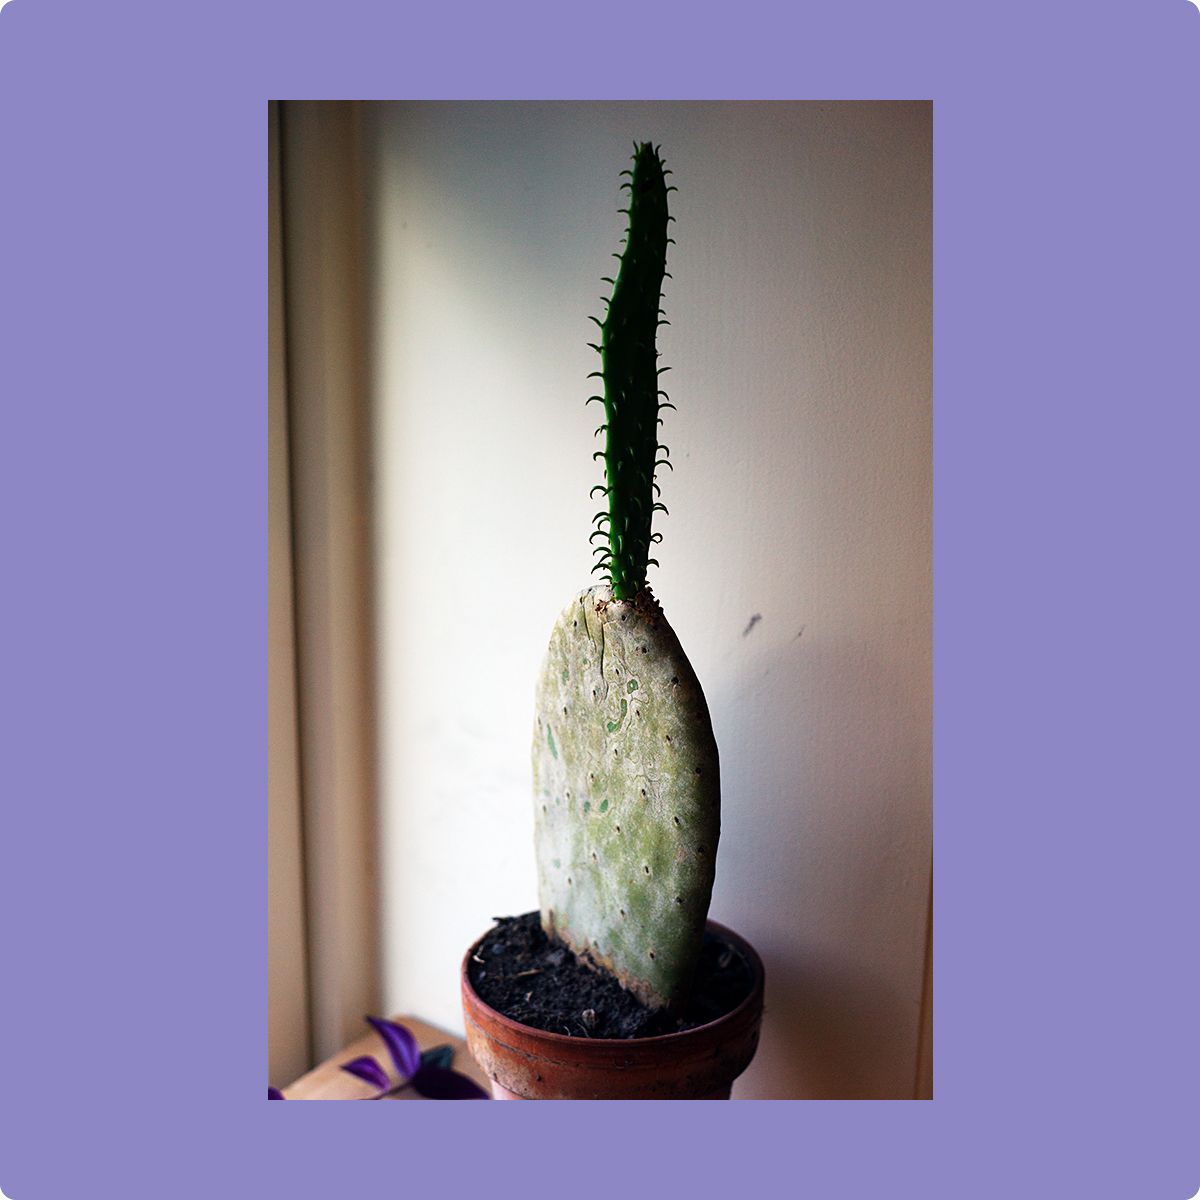 Fotografi av en kaktus som har en mindre kaktus voksende ut av seg